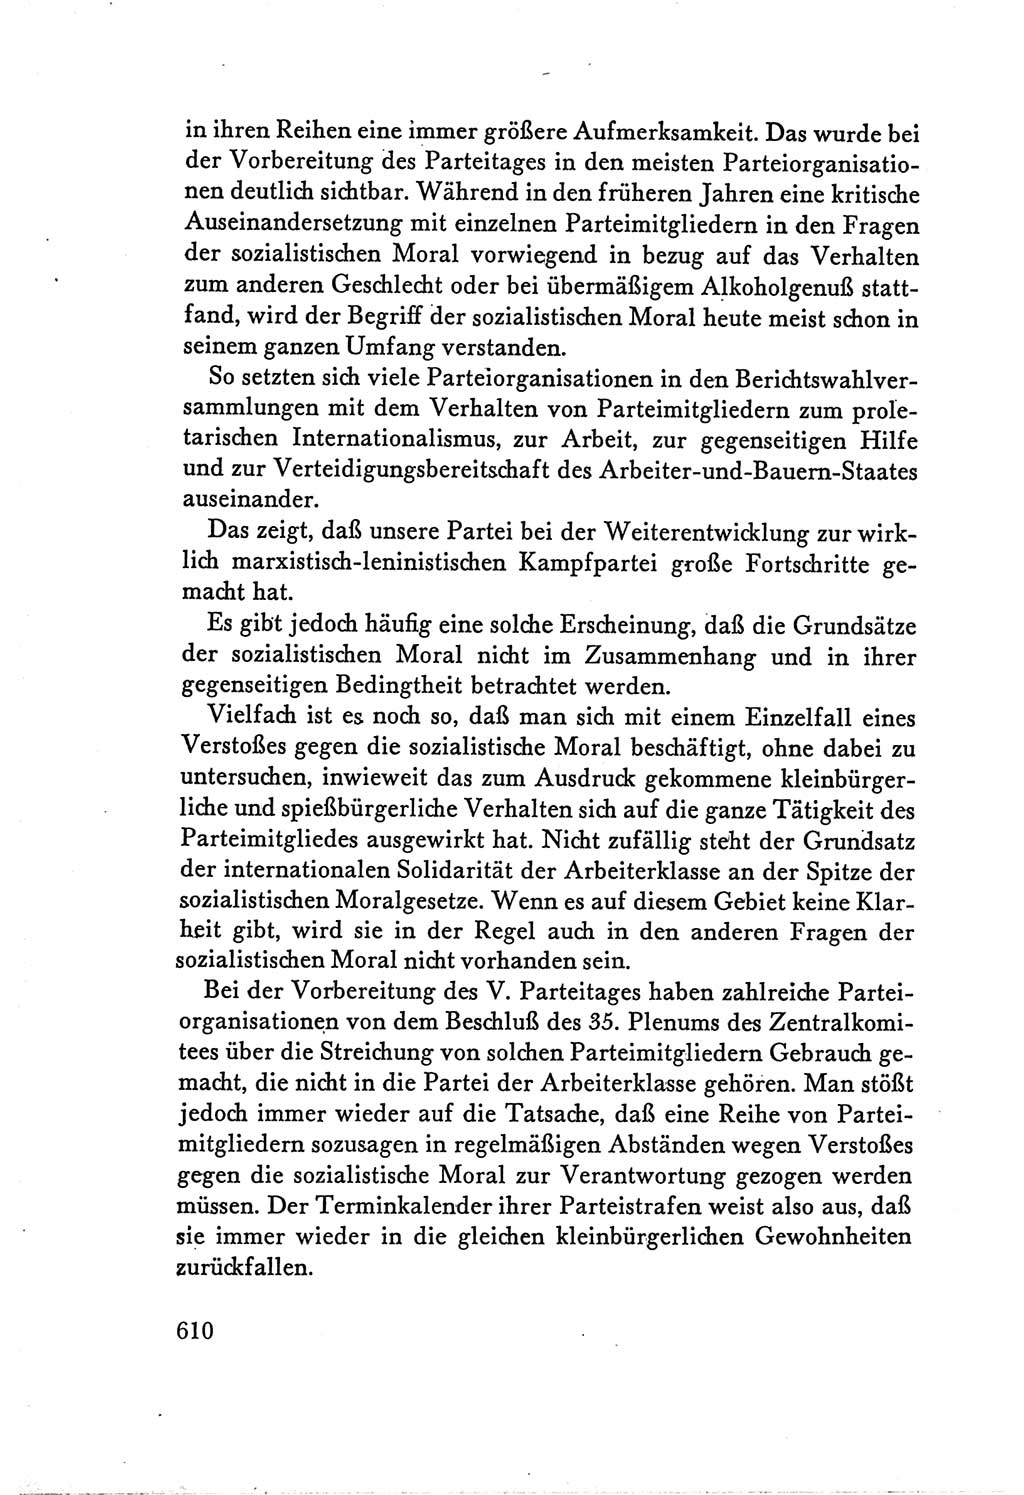 Protokoll der Verhandlungen des Ⅴ. Parteitages der Sozialistischen Einheitspartei Deutschlands (SED) [Deutsche Demokratische Republik (DDR)] 1958, Seite 610